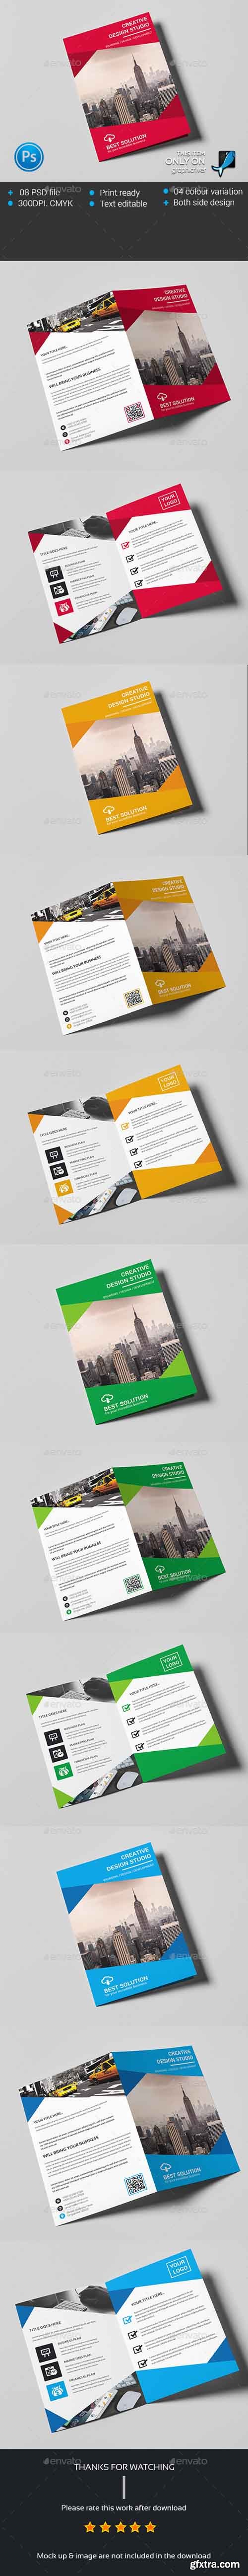 GR - Corporate Business Bi-fold Brochure 13948978